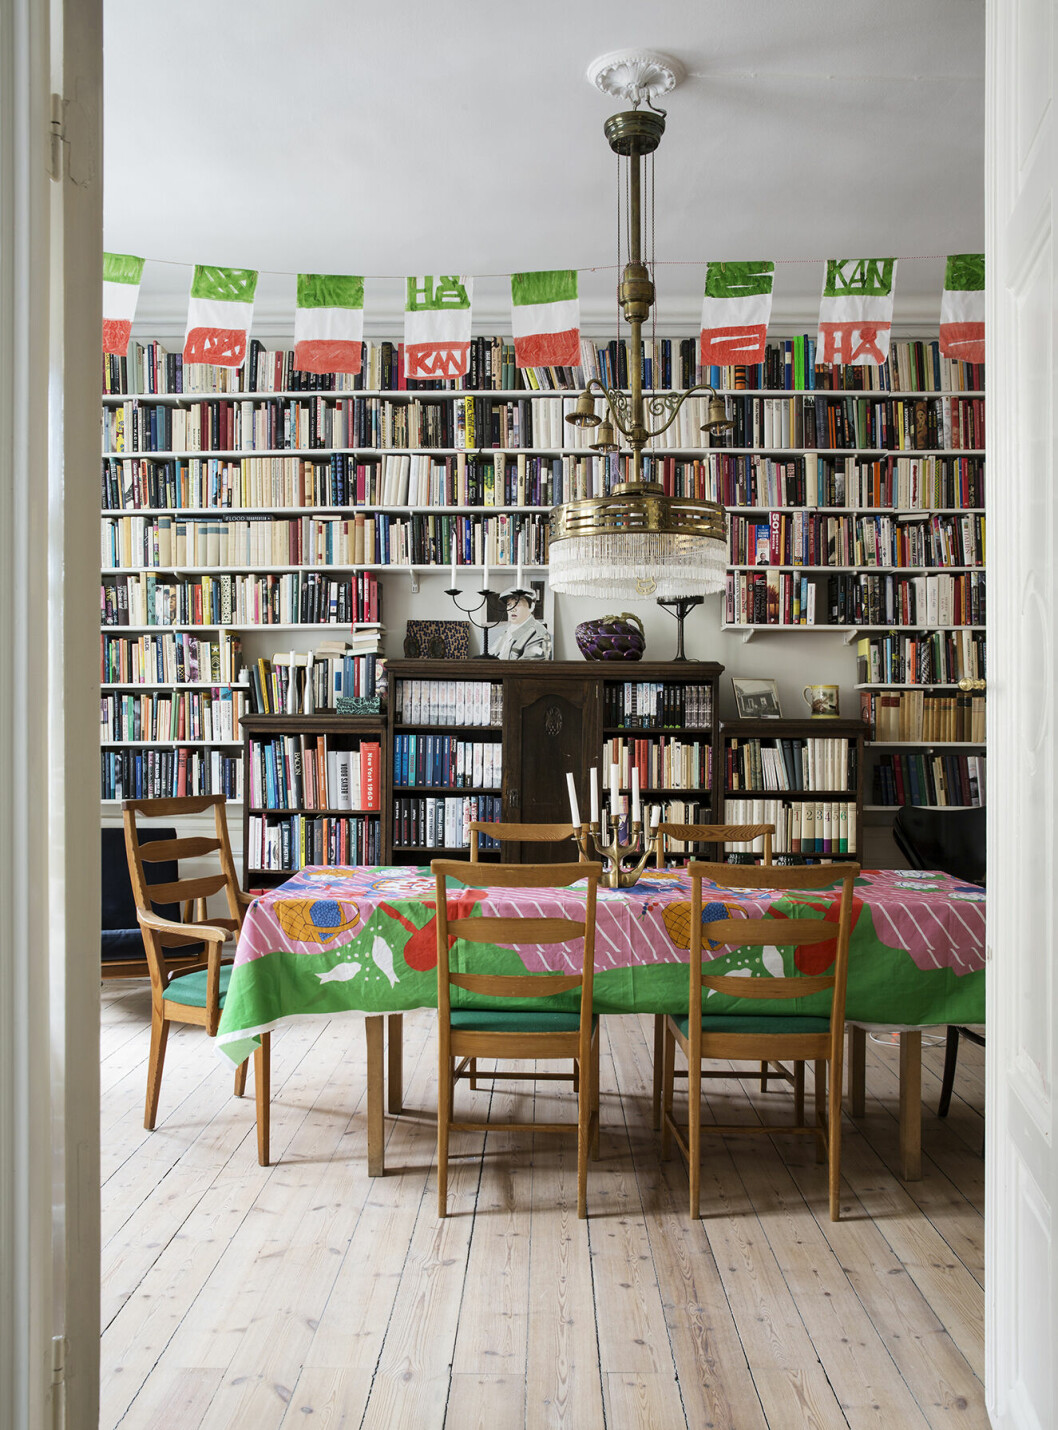 Familjens alla böcker står verkligen i centrum hemma hos Lotta och Håkan.